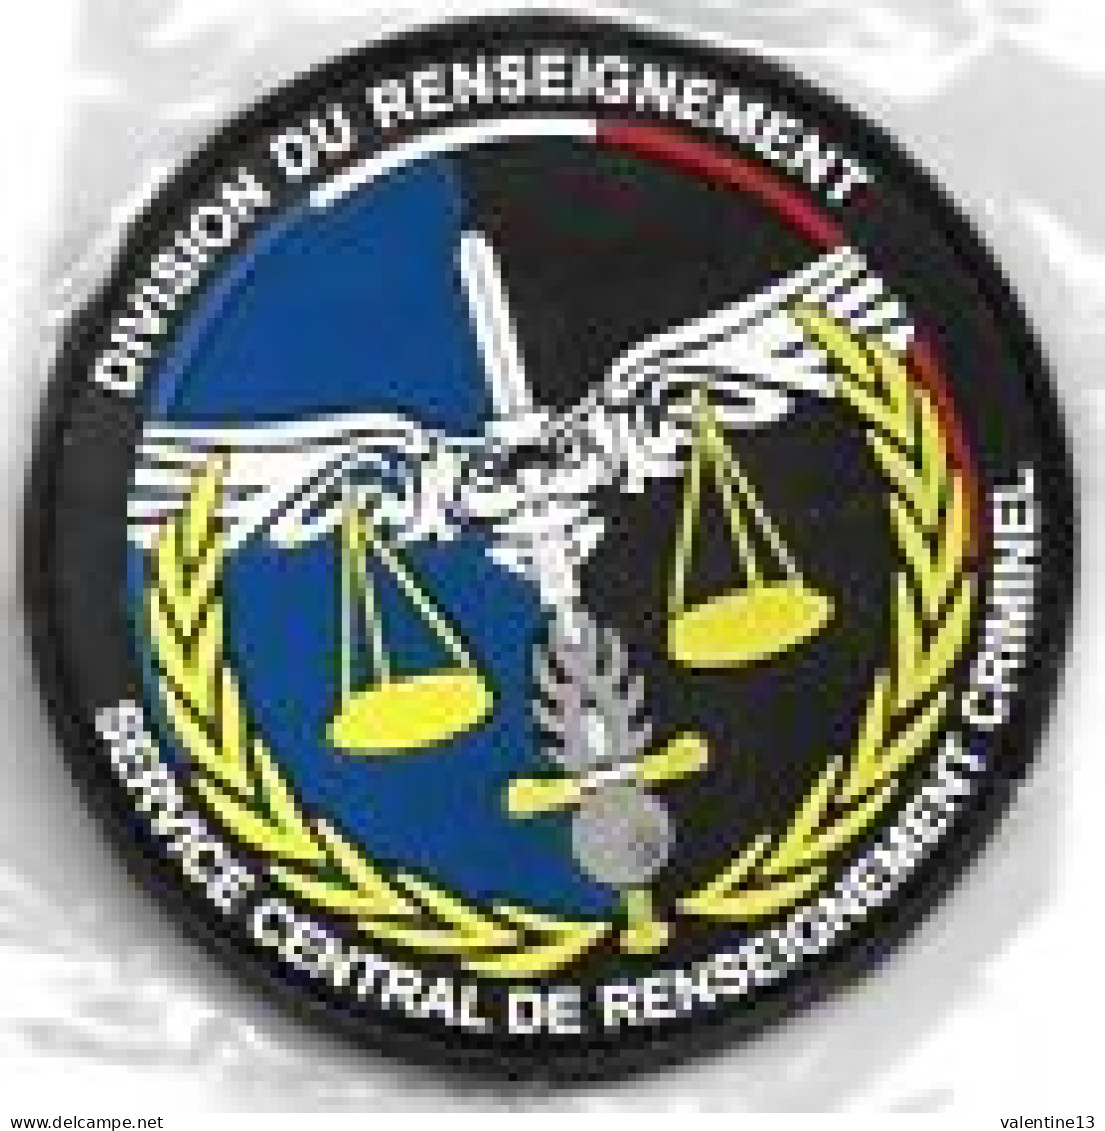 Ecusson PVC GENDARMERIE DIVISION DU RENSEIGNEMENT SCE CENTRAL CRIMINEL - Polizia